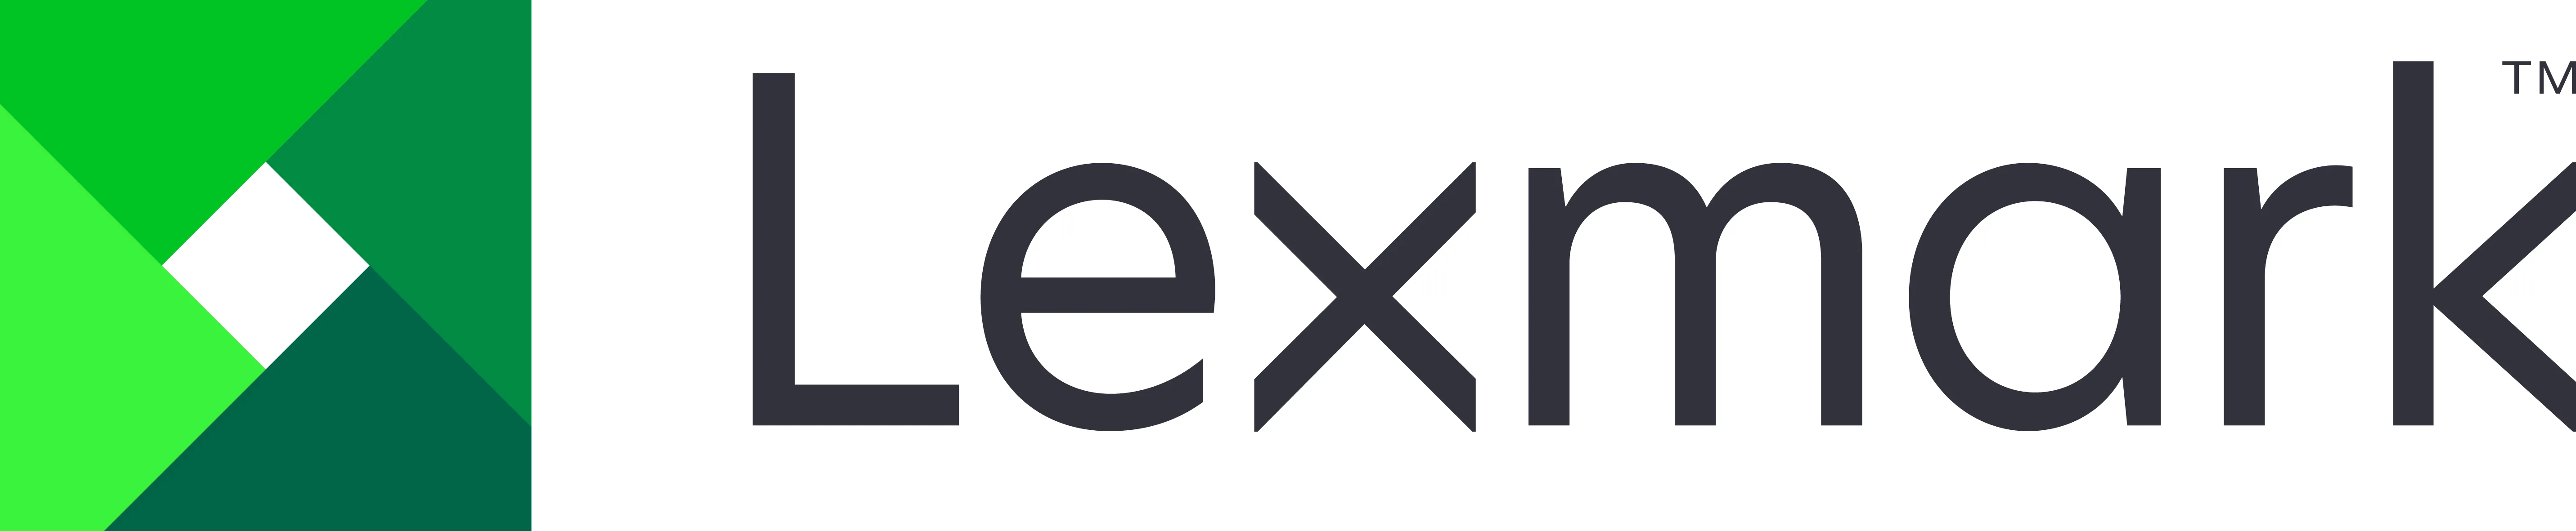 Vente LEXMARK CX725 Service sur site de 4 ans Lexmark au meilleur prix - visuel 2